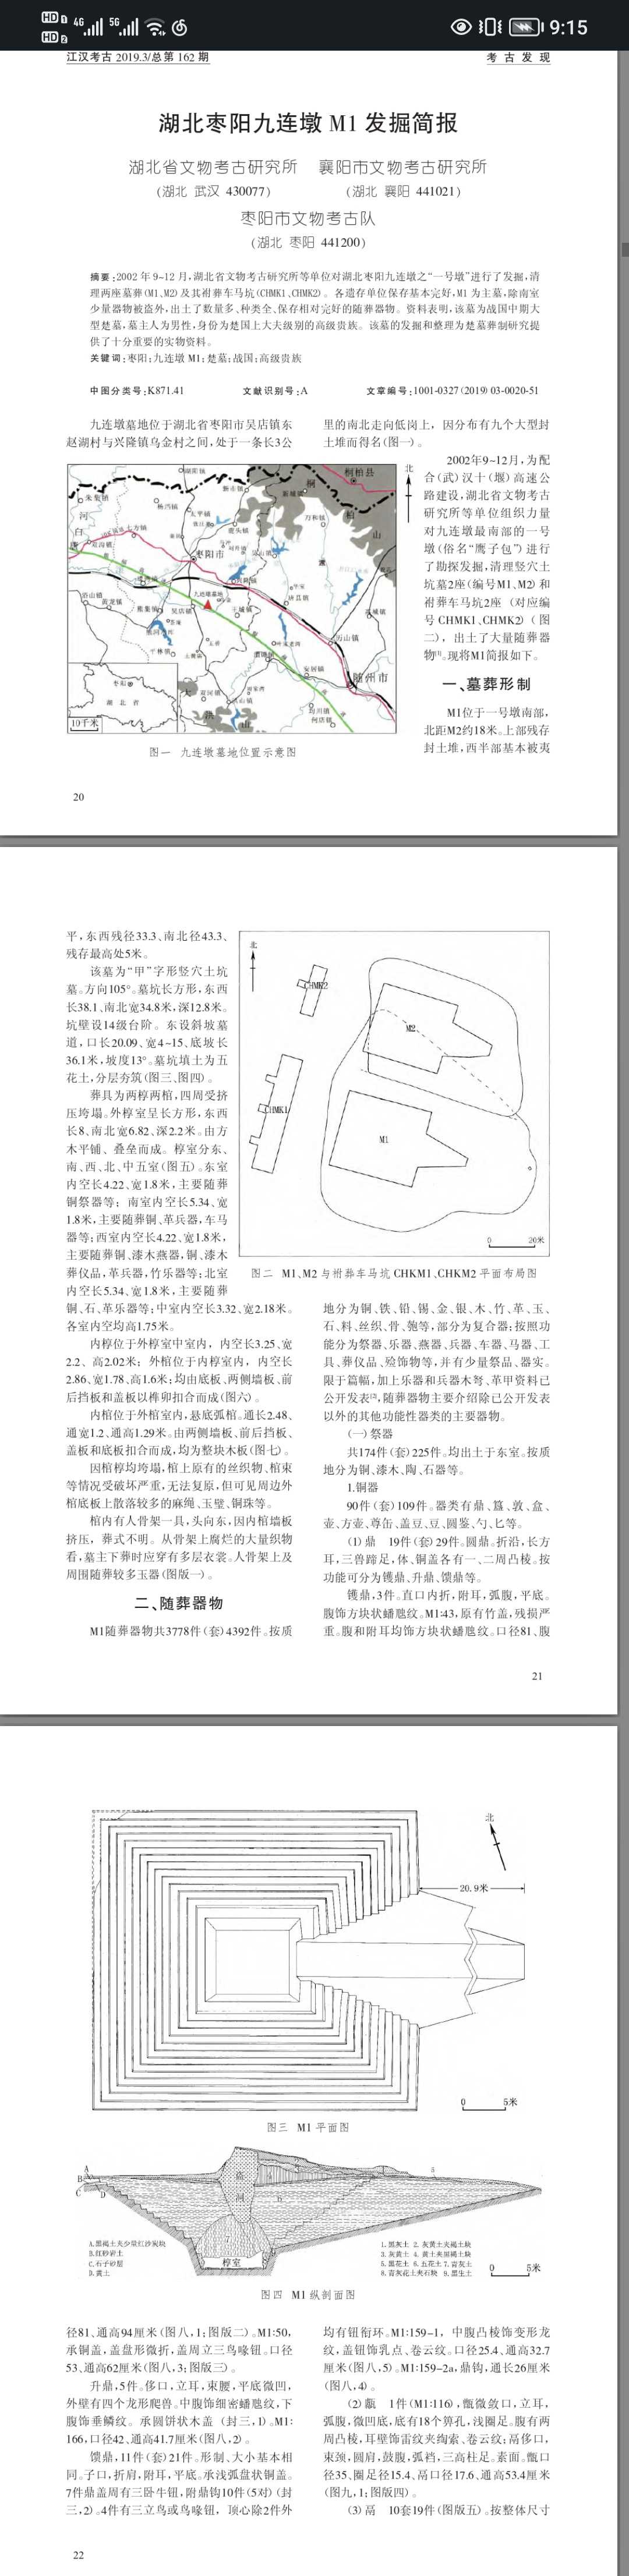 “玉枕”作为一种高级的丧葬用玉， 在汉代的帝王墓葬中经常见到_玉片